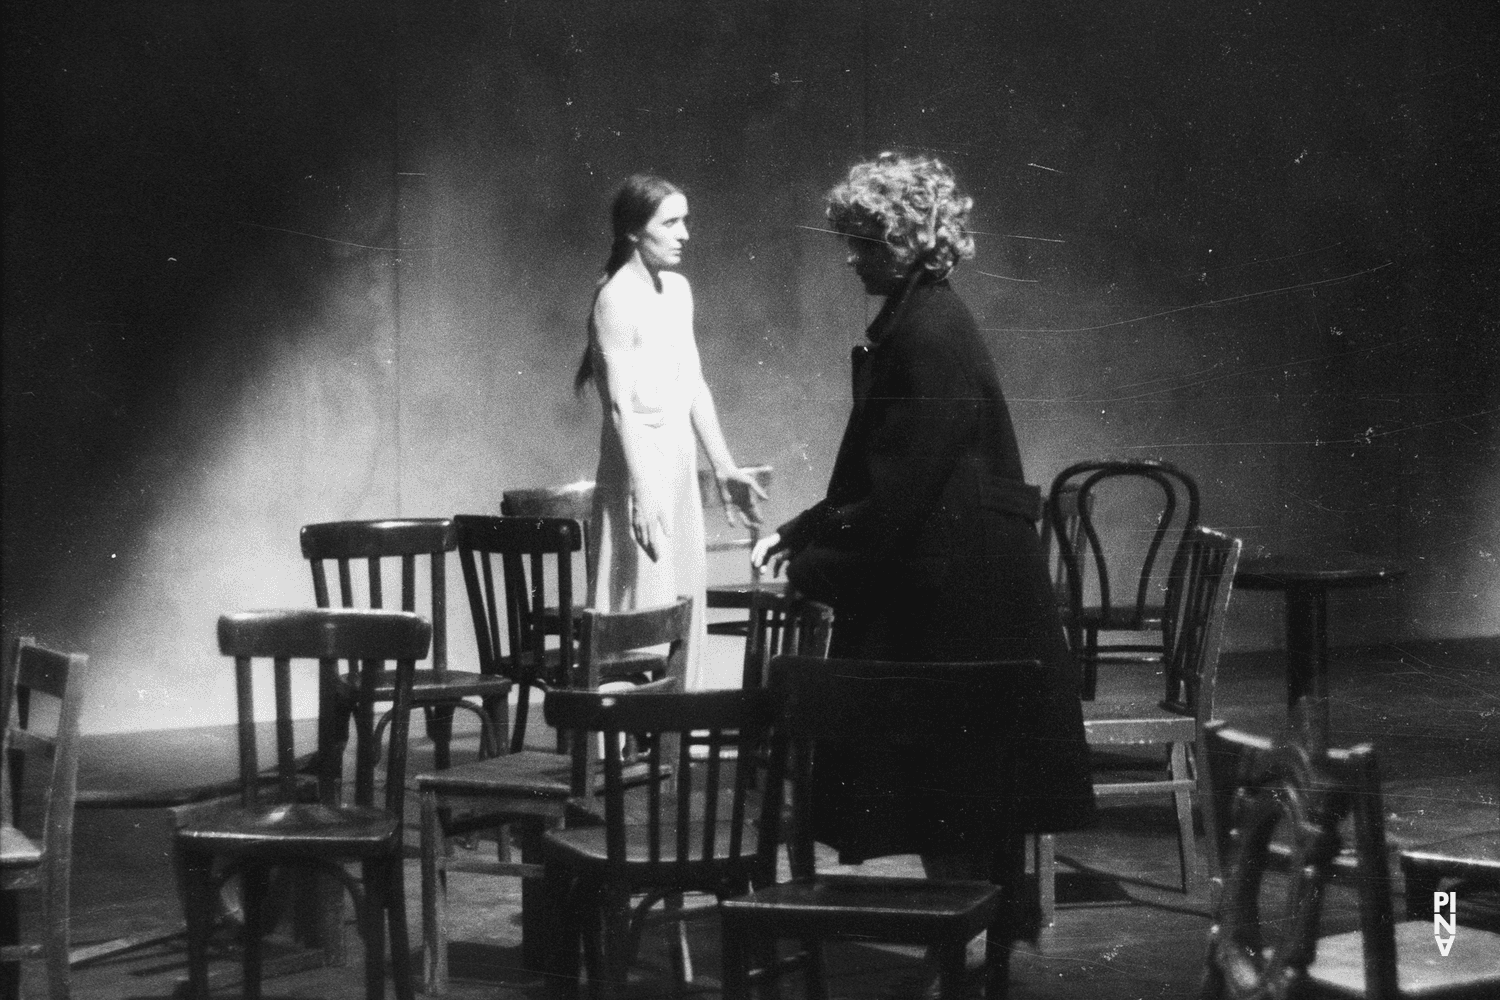 Meryl Tankard and Pina Bausch in “Café Müller” by Pina Bausch